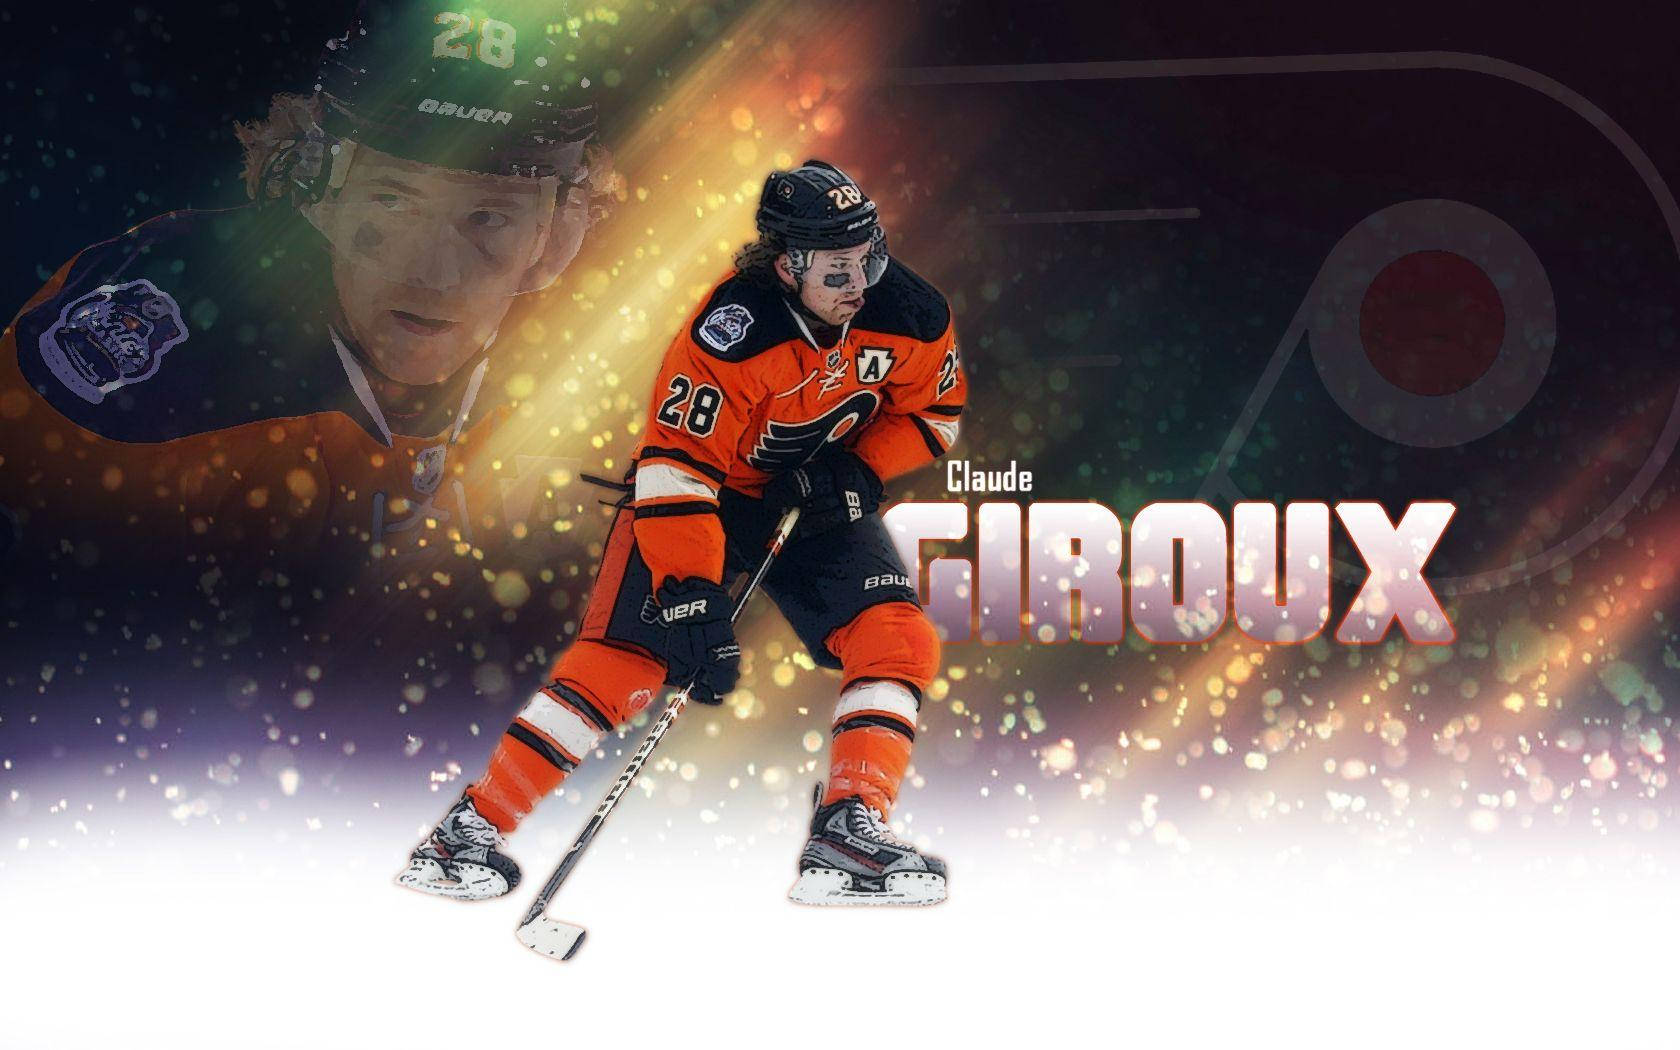 Claude Giroux National Hockey League Digital Art Wallpaper